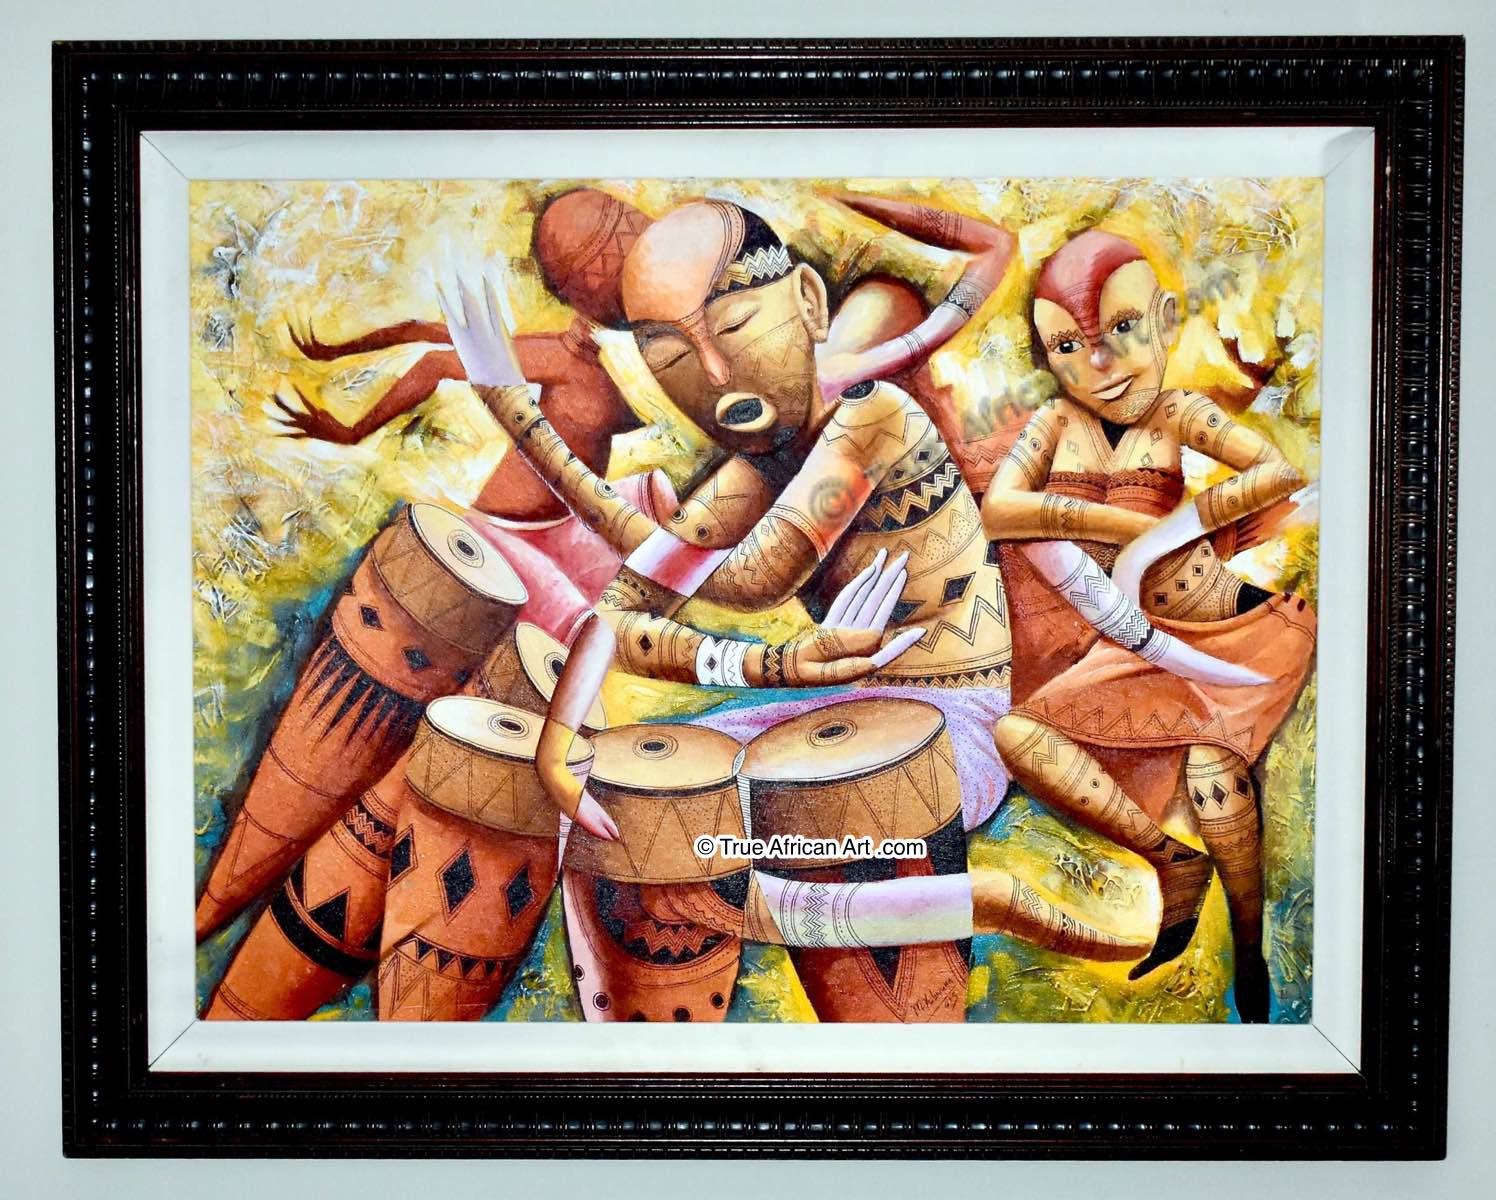 Masoud  |  Tanzania  |  "Synced Rhythm 2 - Framed"  |  True African Art .com